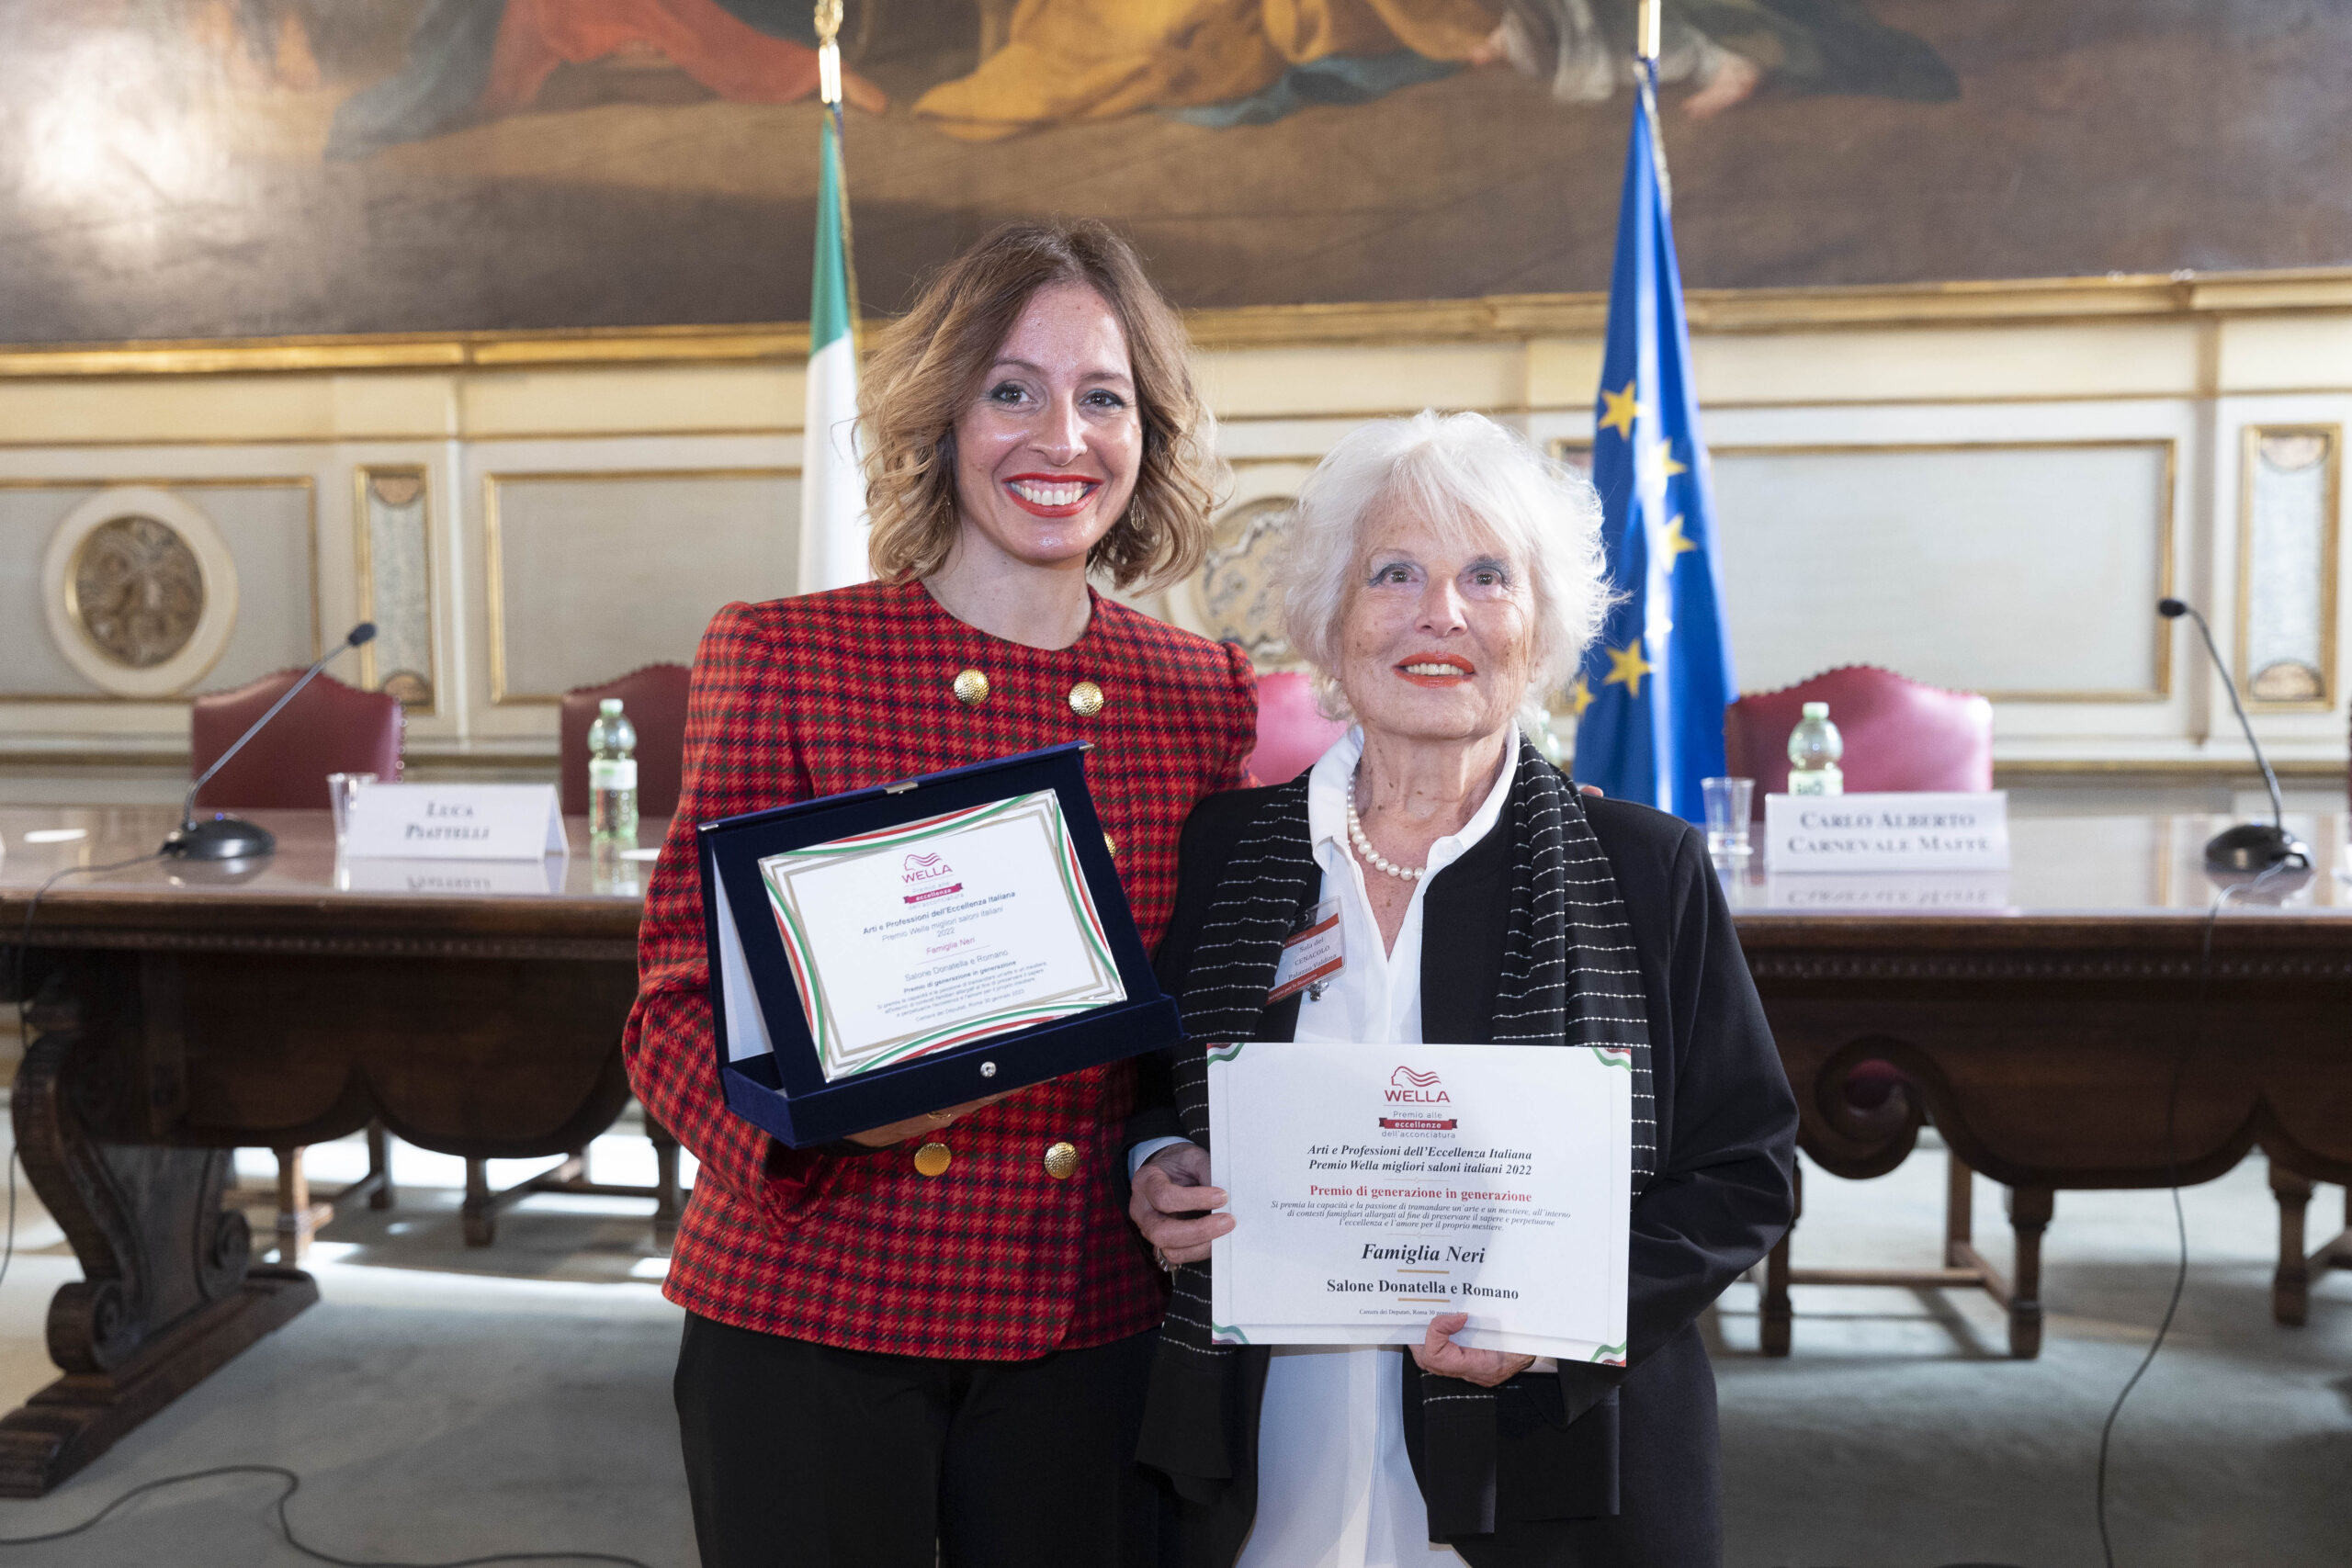 A Montecitorio la famiglia Neri di Donatella e Romano Parrucchieri di Follonica vince il Premio Wella Donne Cuore e Testa